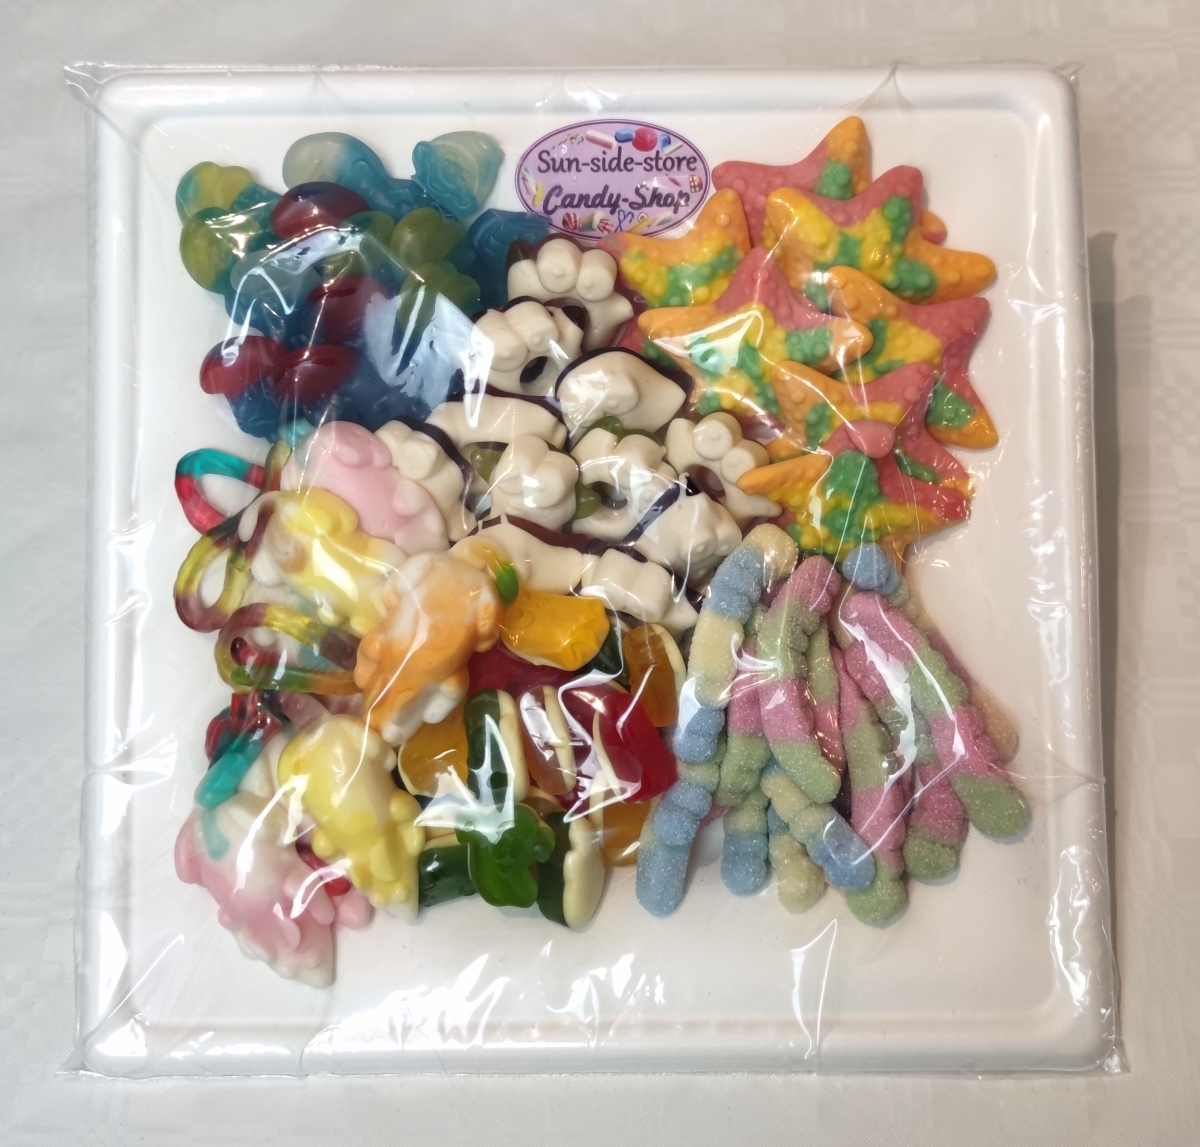 Die XXL Idee für ihren Kindergeburtstag. Die große Süßigkeitenplatte mit dem Kindermix oder als Pick & Mix nach ihren Wünschen